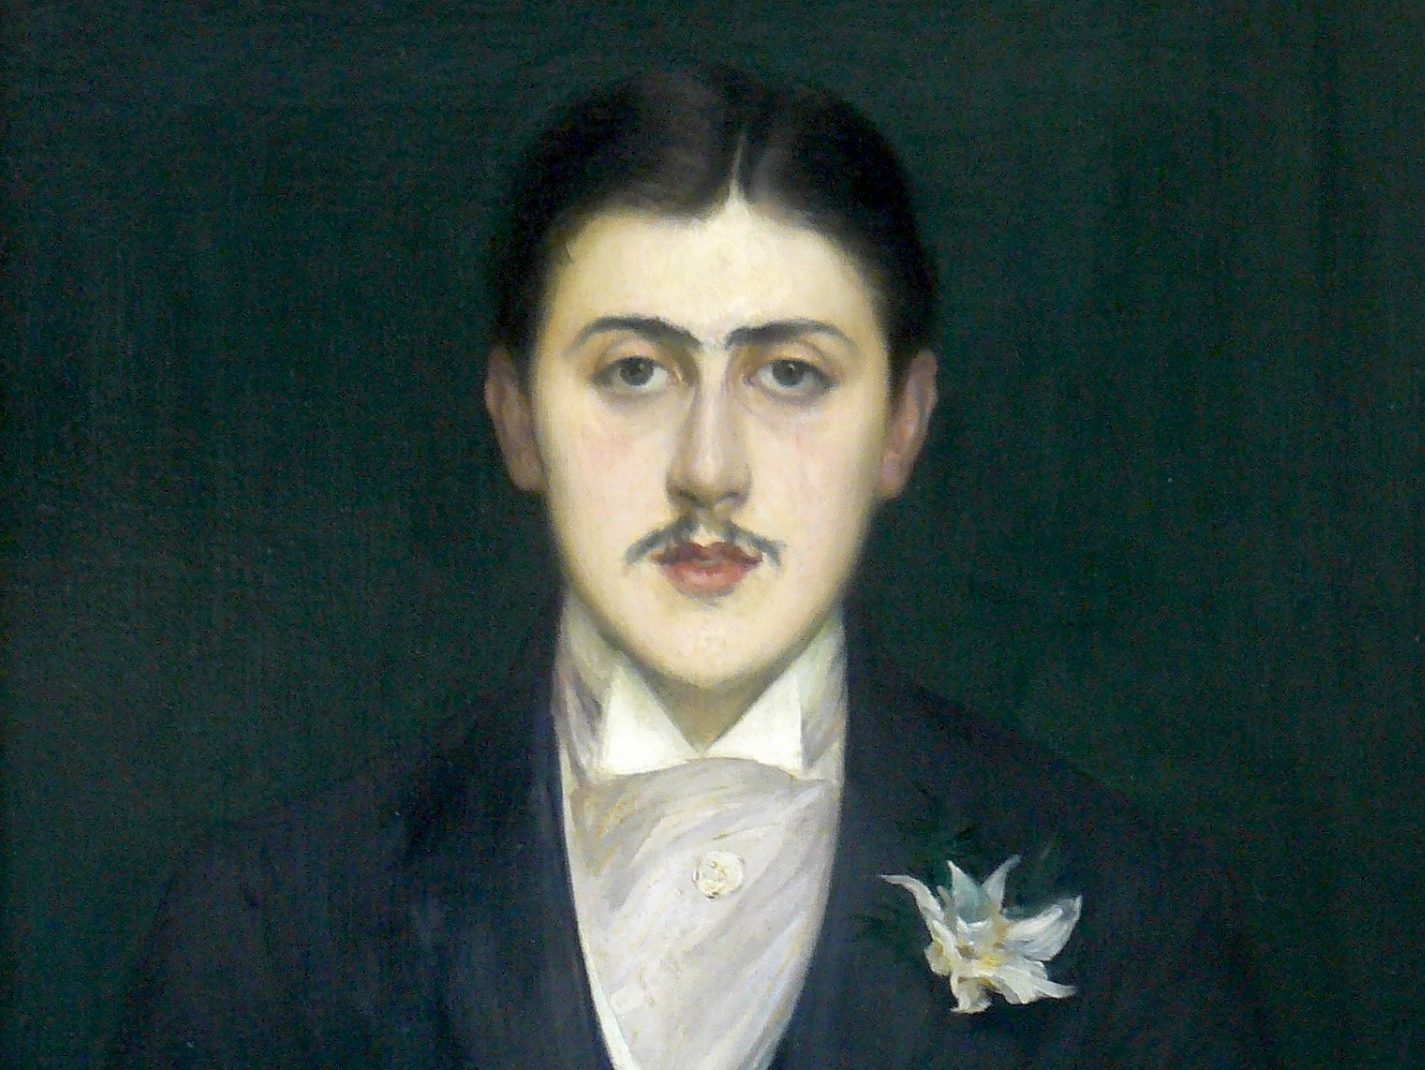 Bildnis des jungen Marcel Proust in Frack und mit Blume am Revers